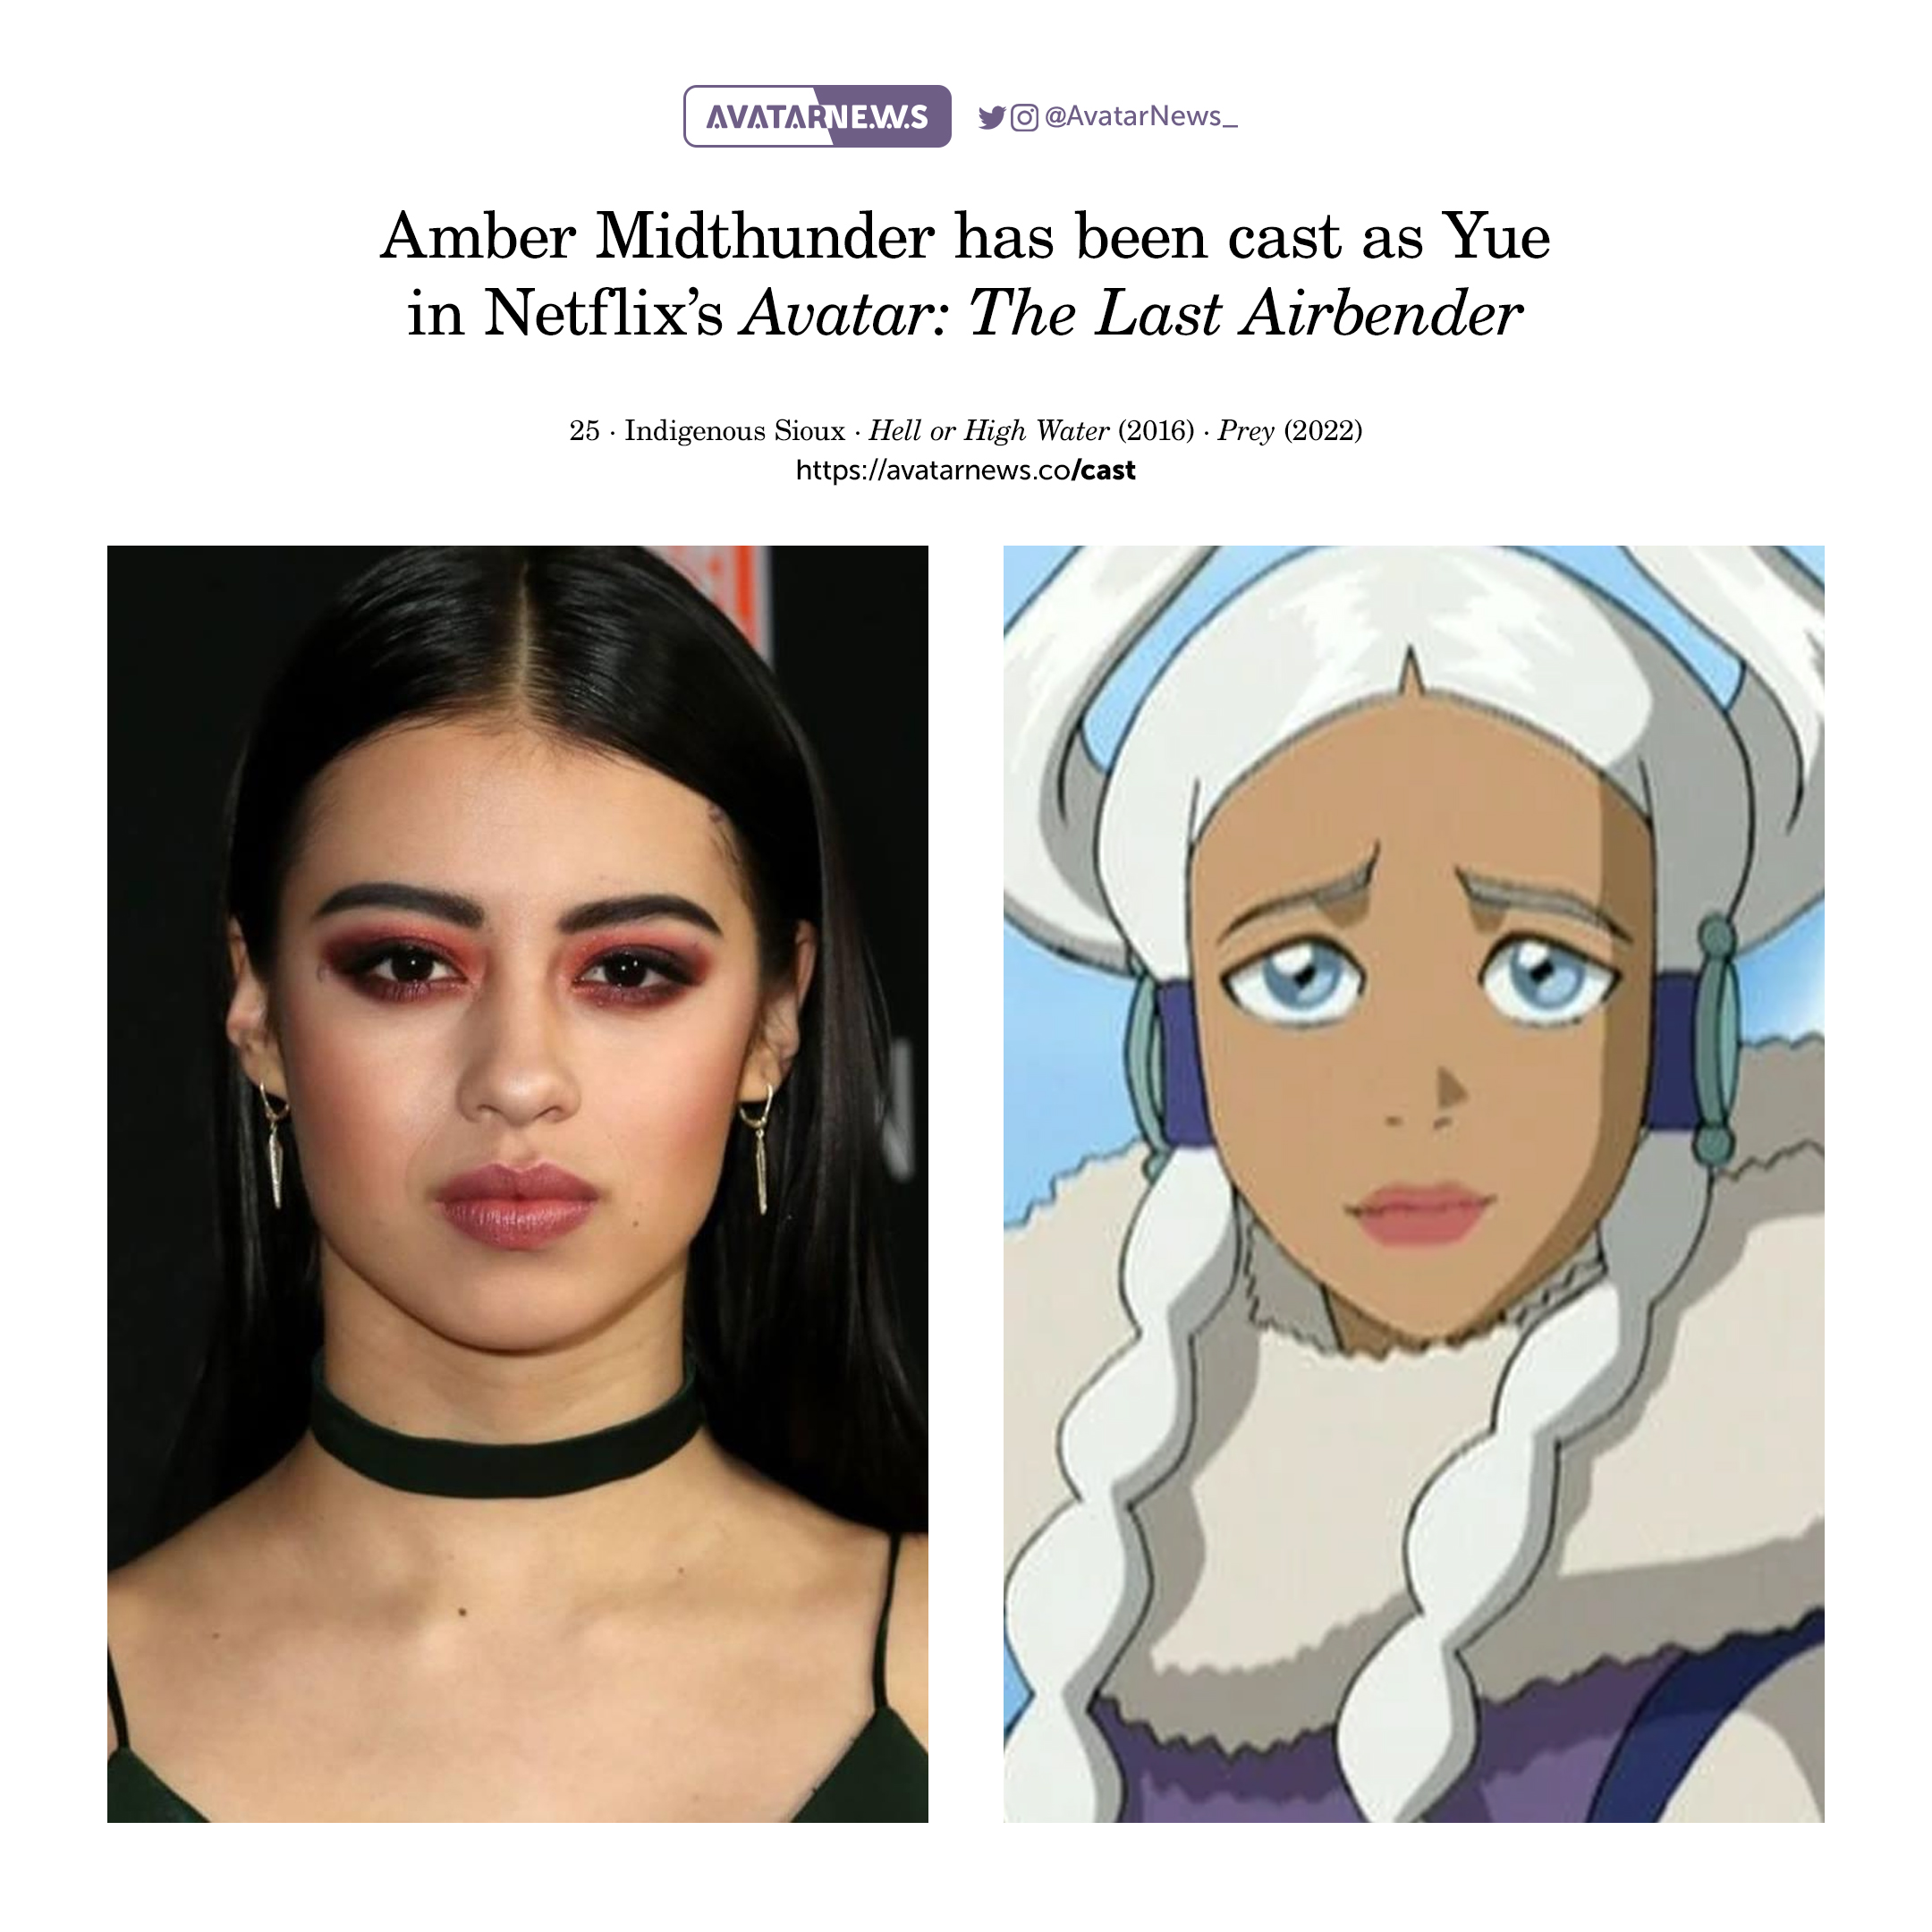 Amber Midthunder Yue Avatar: Chung tay tìm hiểu về một trong những nhân vật quan trọng nhất trong phim Avatar - Amber Midthunder Yue. Với tạo hình đặc biệt của Amber trong bộ phim, các bạn sẽ được chiêm ngưỡng vẻ đẹp hoang sơ, mạnh mẽ và quá khứ đầy bi kịch. Hãy khám phá hình ảnh của Amber Midthunder Yue Avatar đầy ấn tượng trong thế giới ảo!